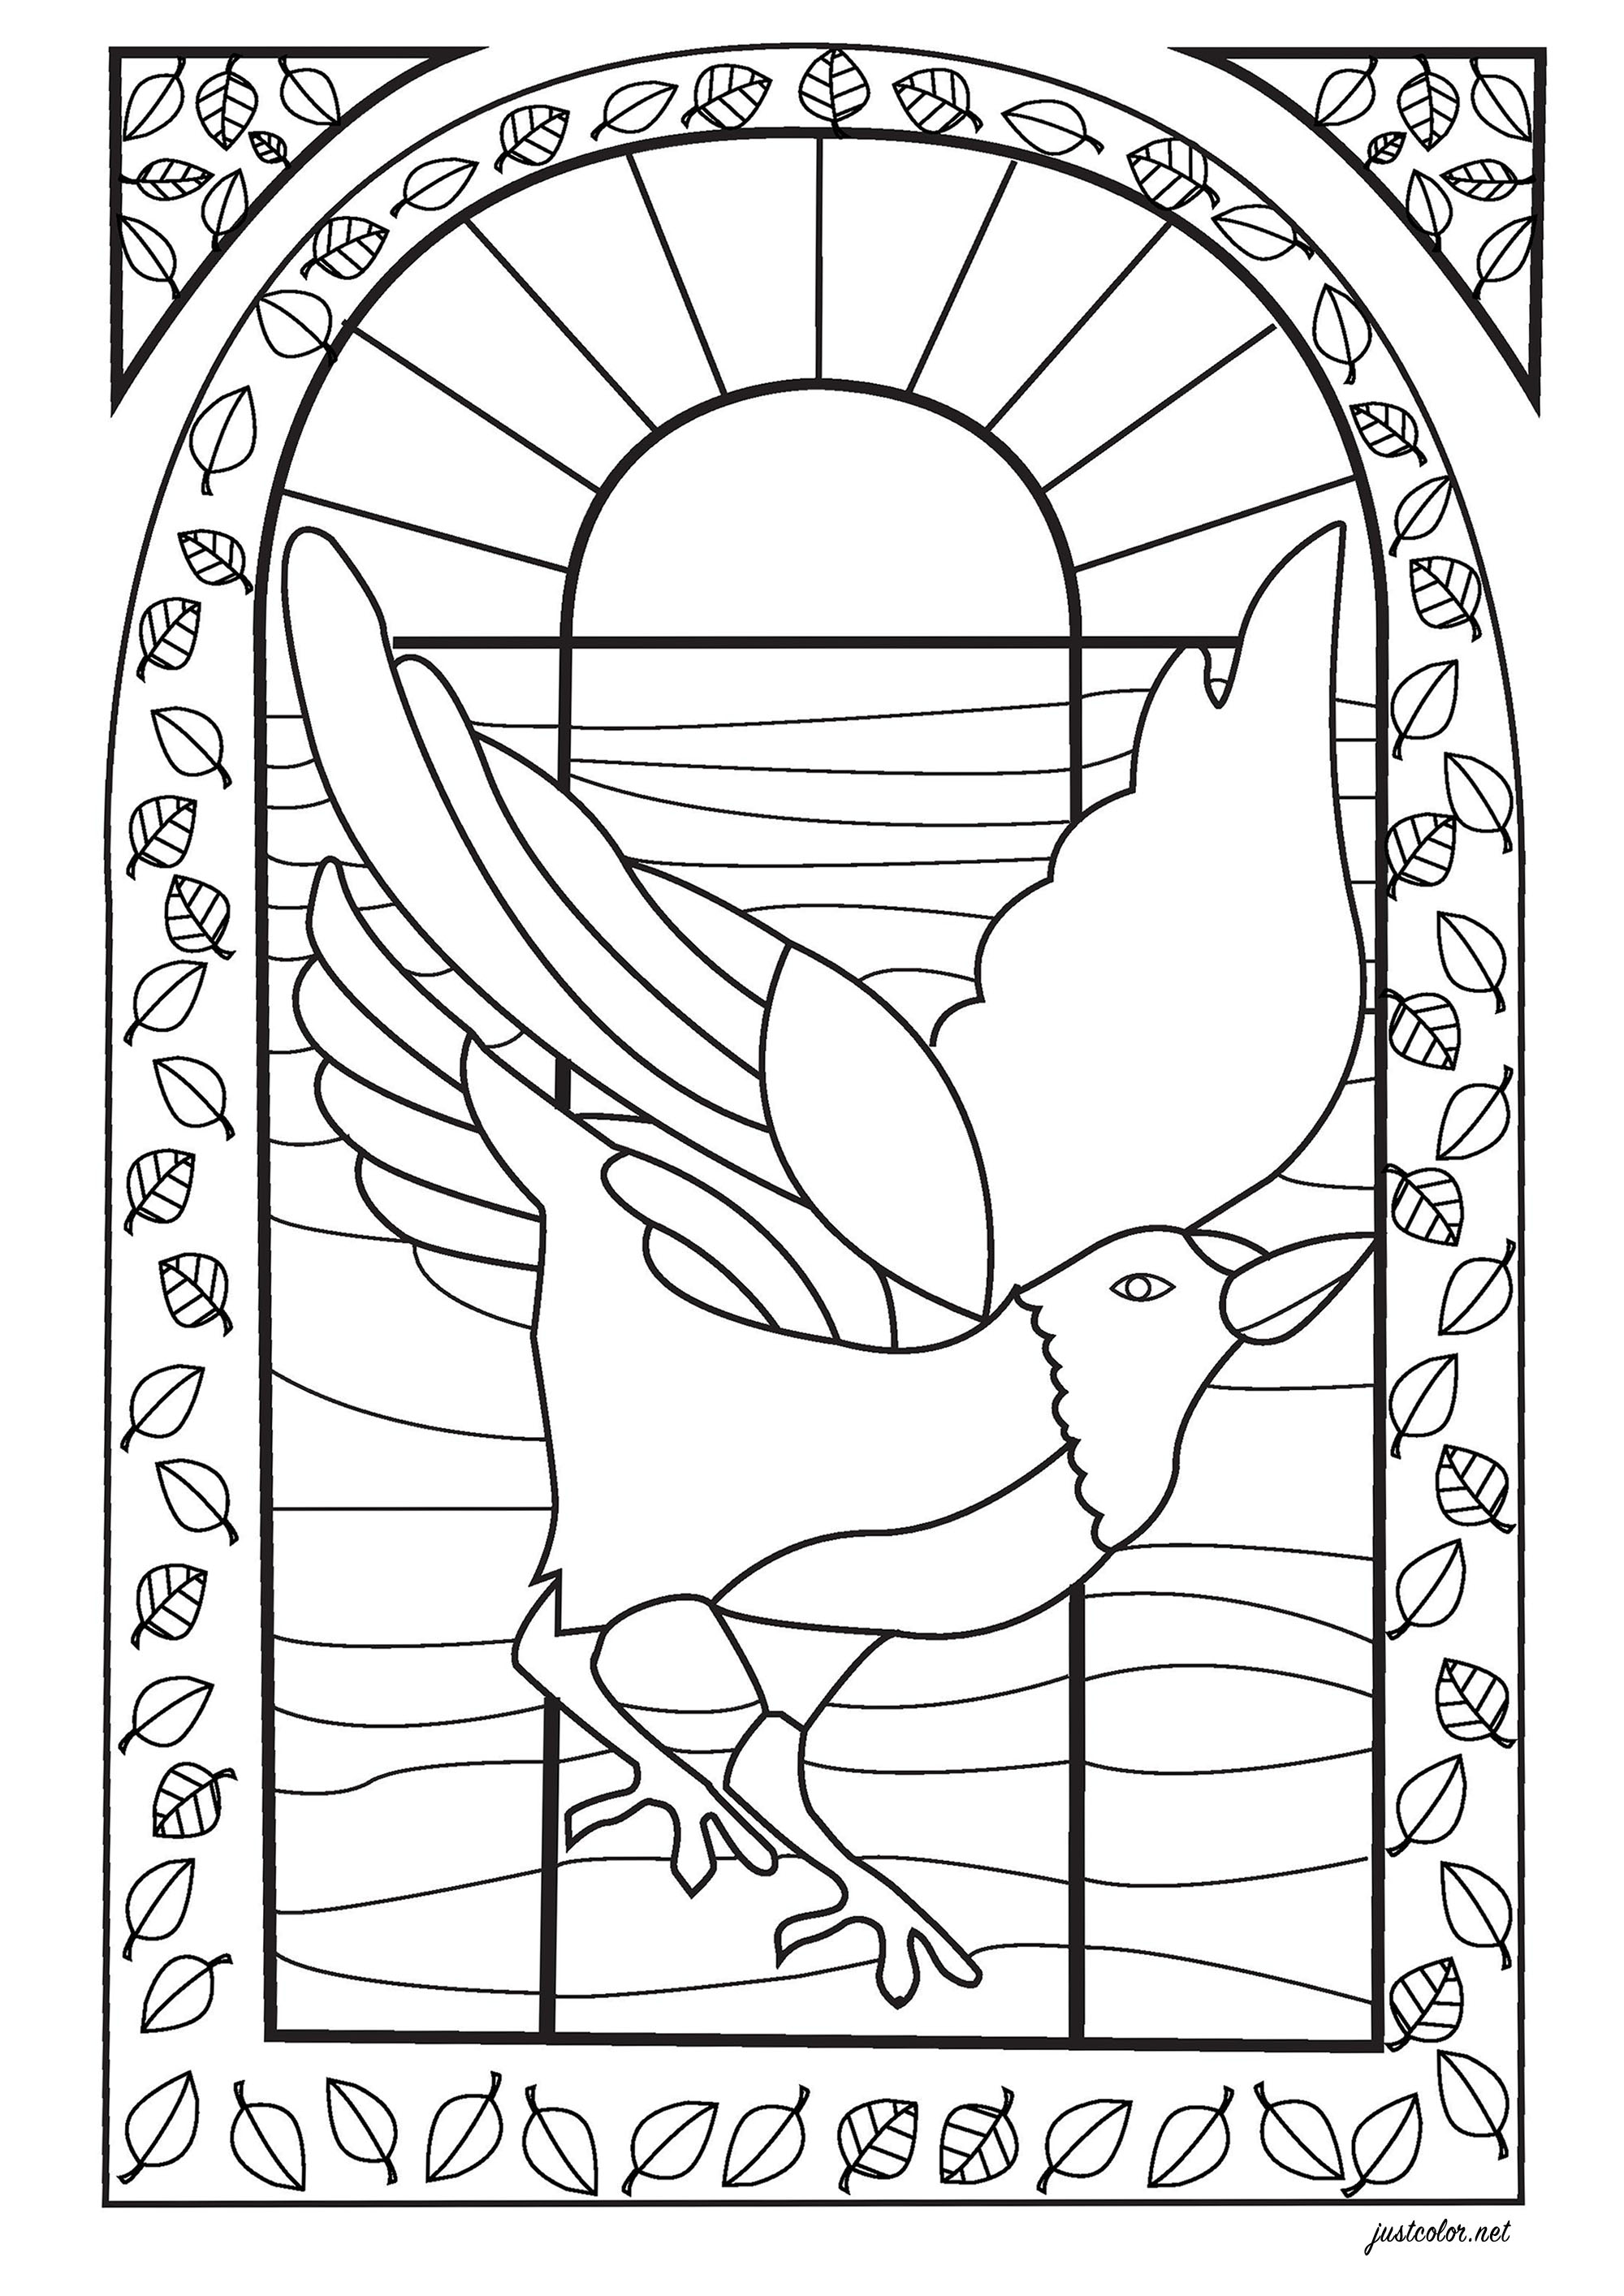 Zeichnung eines Vogels zum Ausmalen, gezeichnet im Stil eines Buntglasfensters